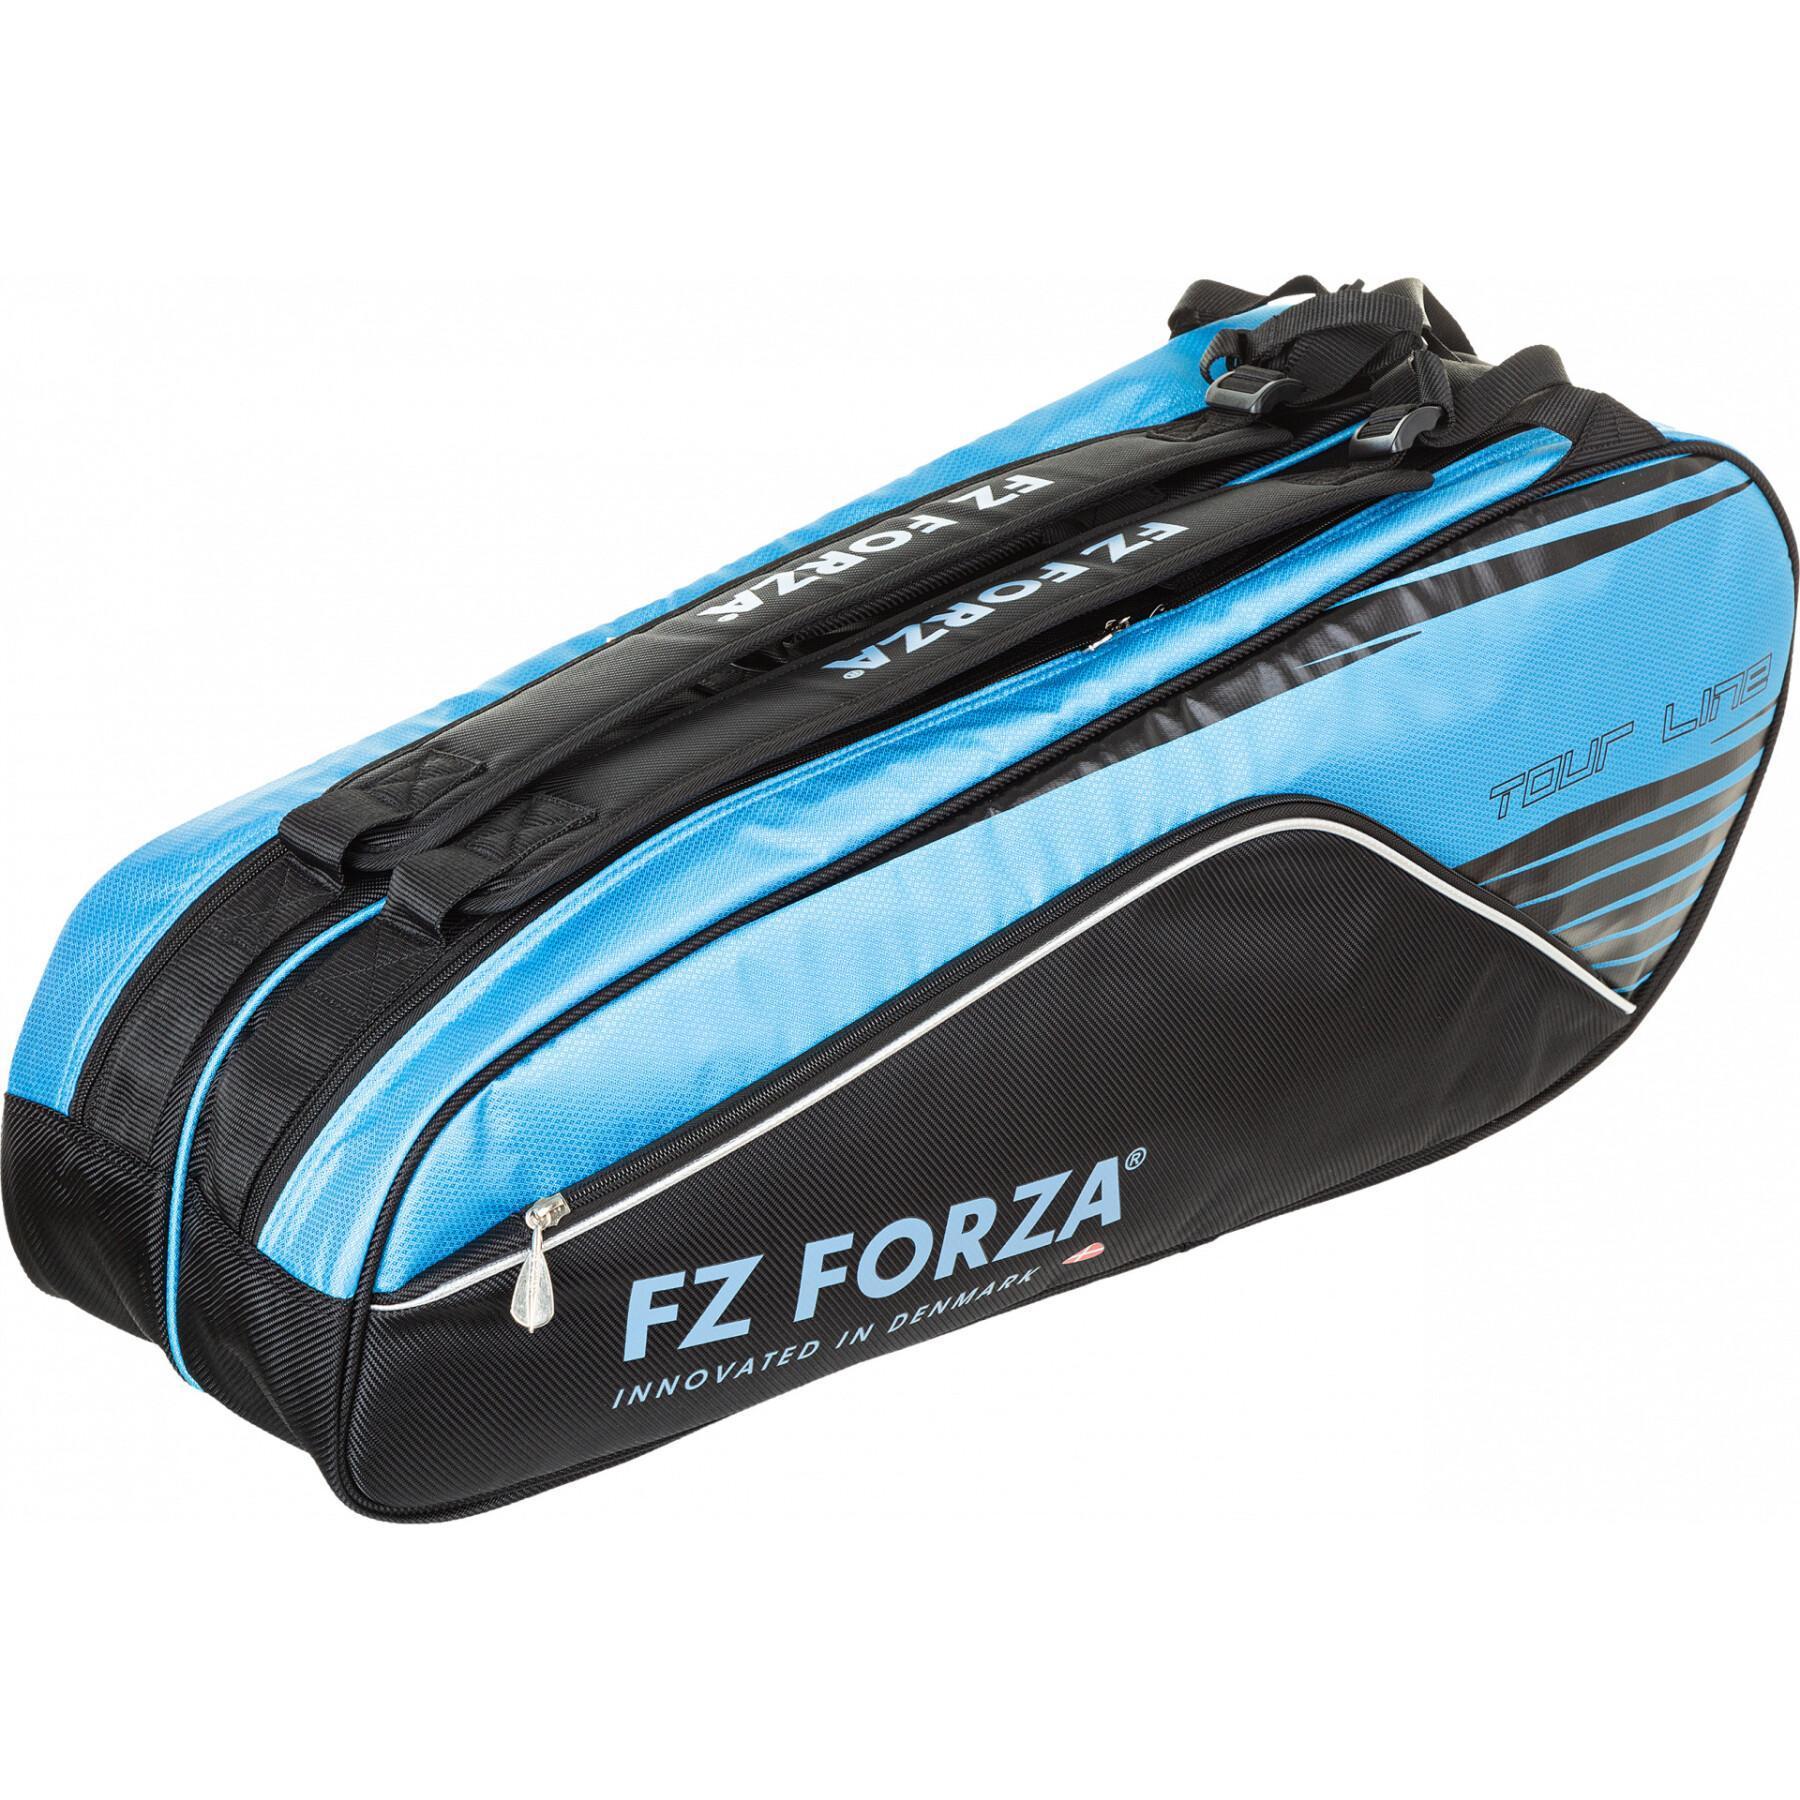 Väska för 6 badmintonracketar FZ Forza